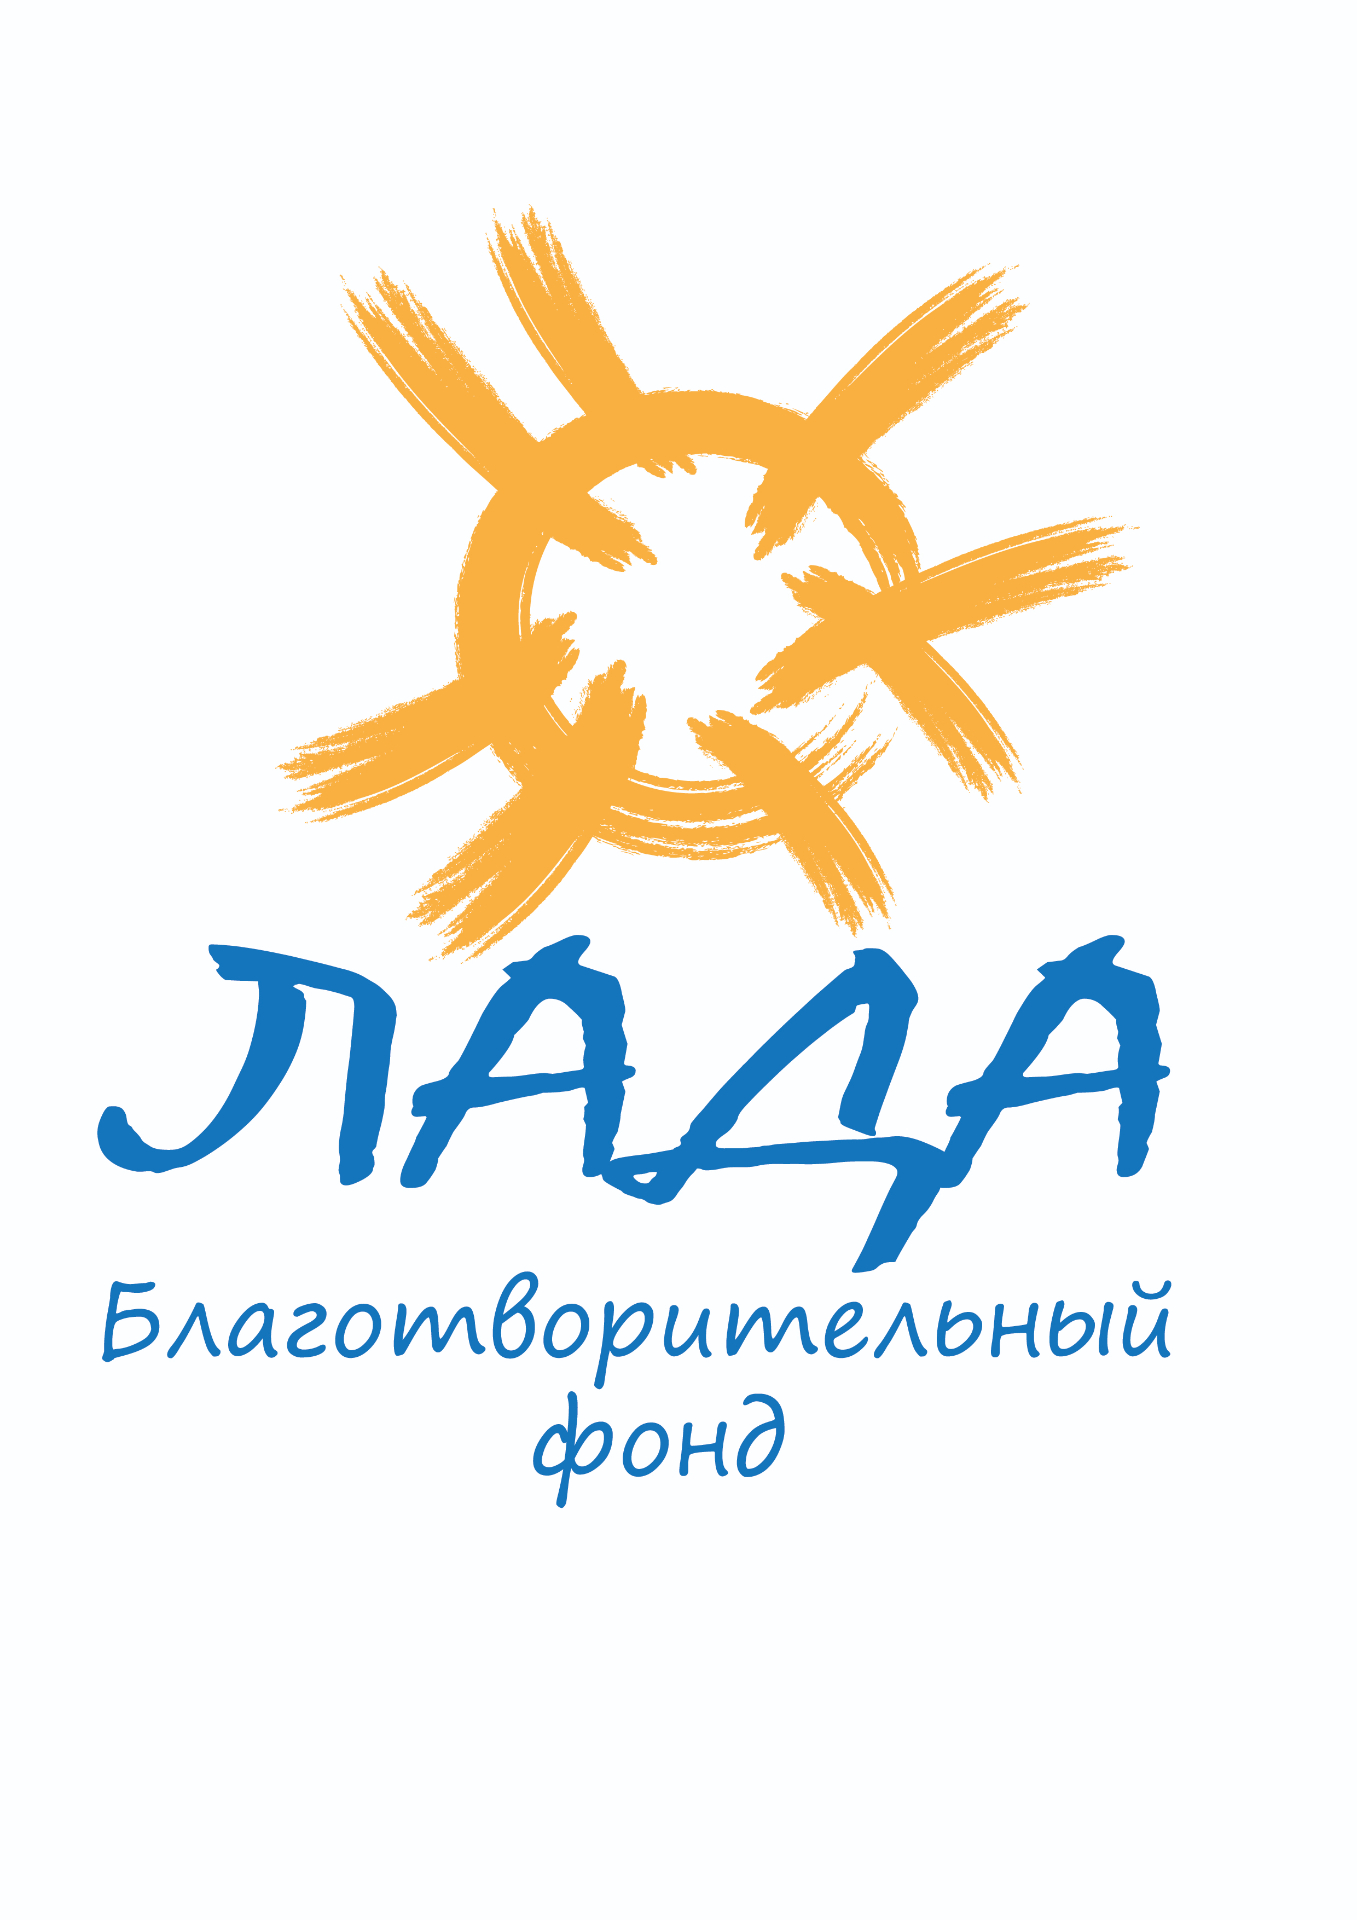 Логотип фонда: Лада